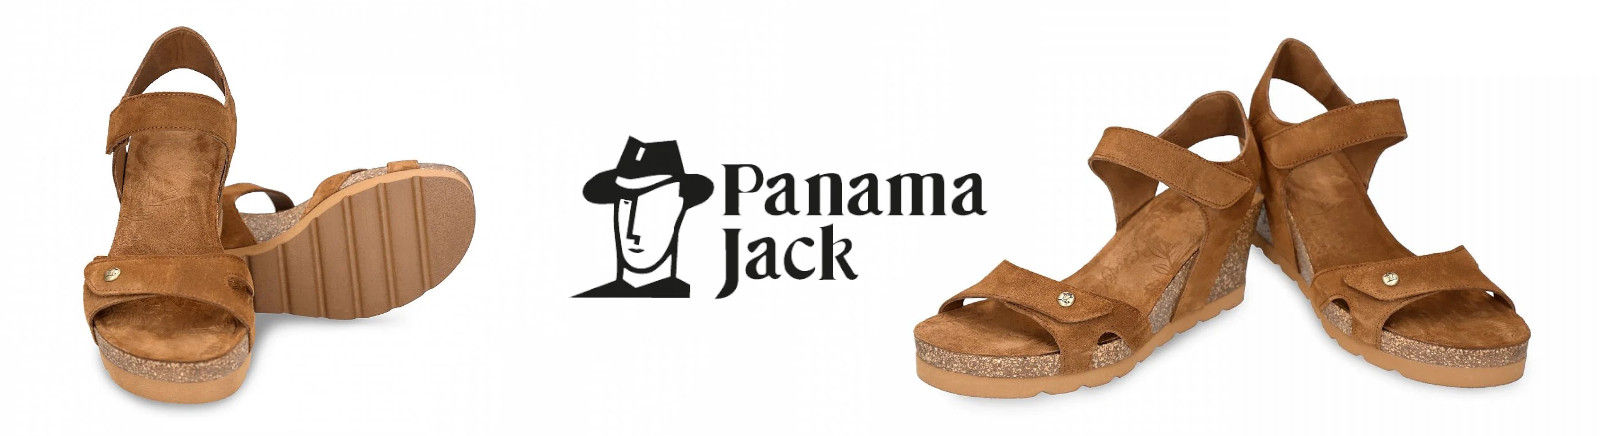 Panama Jack Combat Boots für Damen im Online-Shop von GISY kaufen